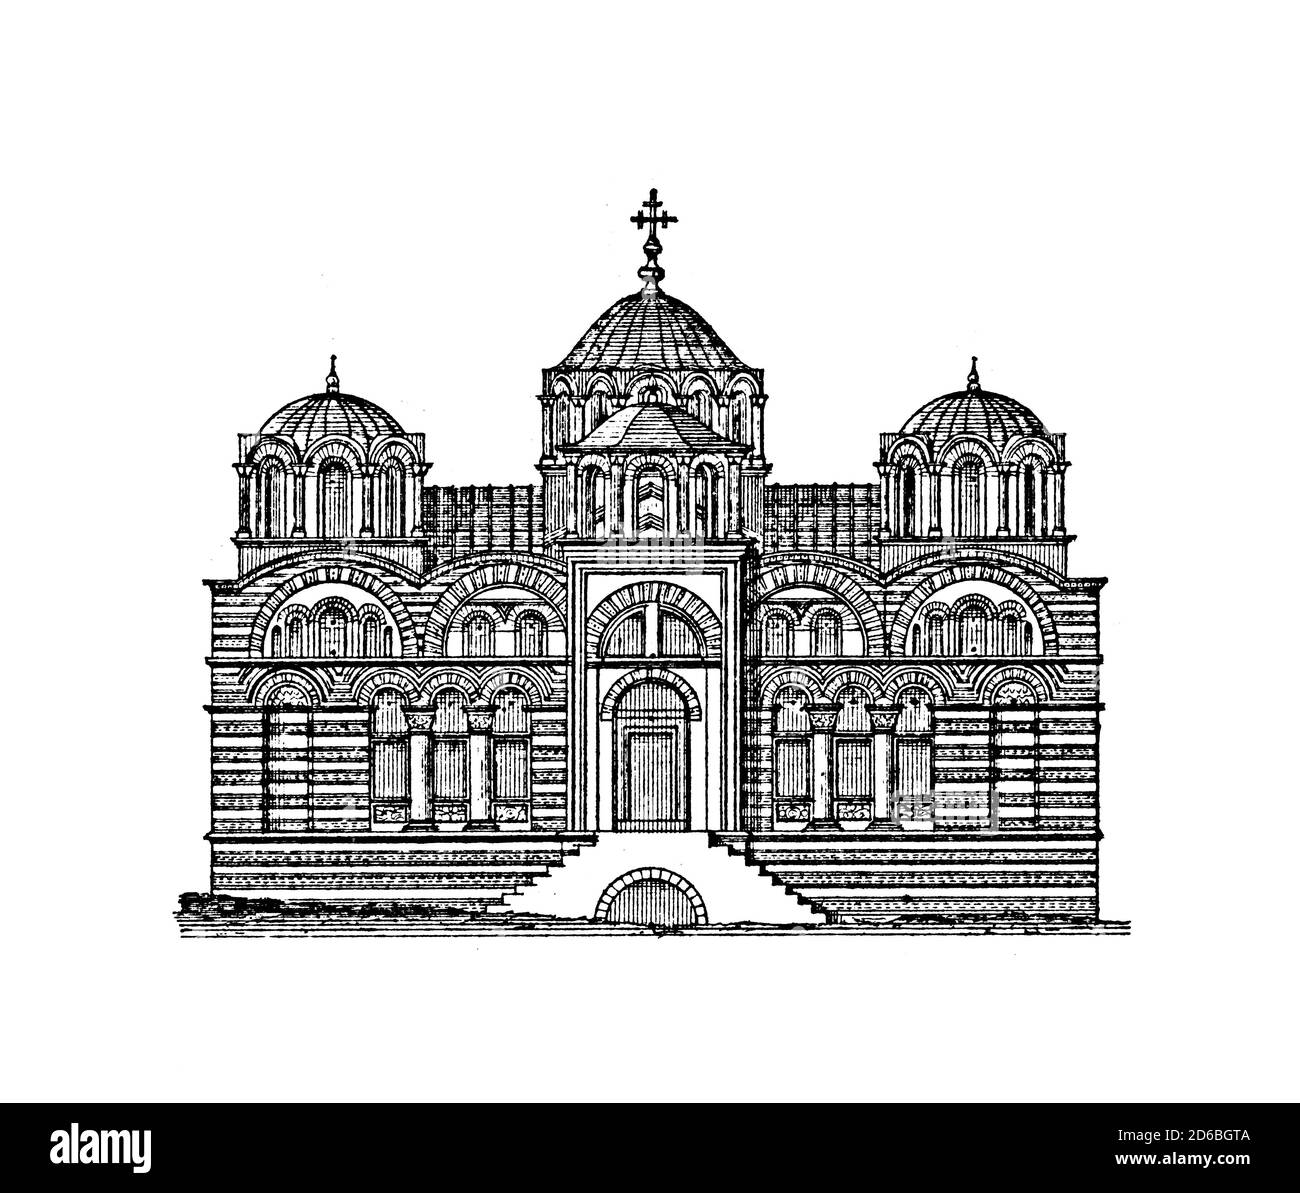 Illustration du XIXe siècle de l'église de Pammakaristos à Istanbul, Turquie. Gravure publiée dans Vergleichende Architektonische Formenlehre par Carl S. Banque D'Images